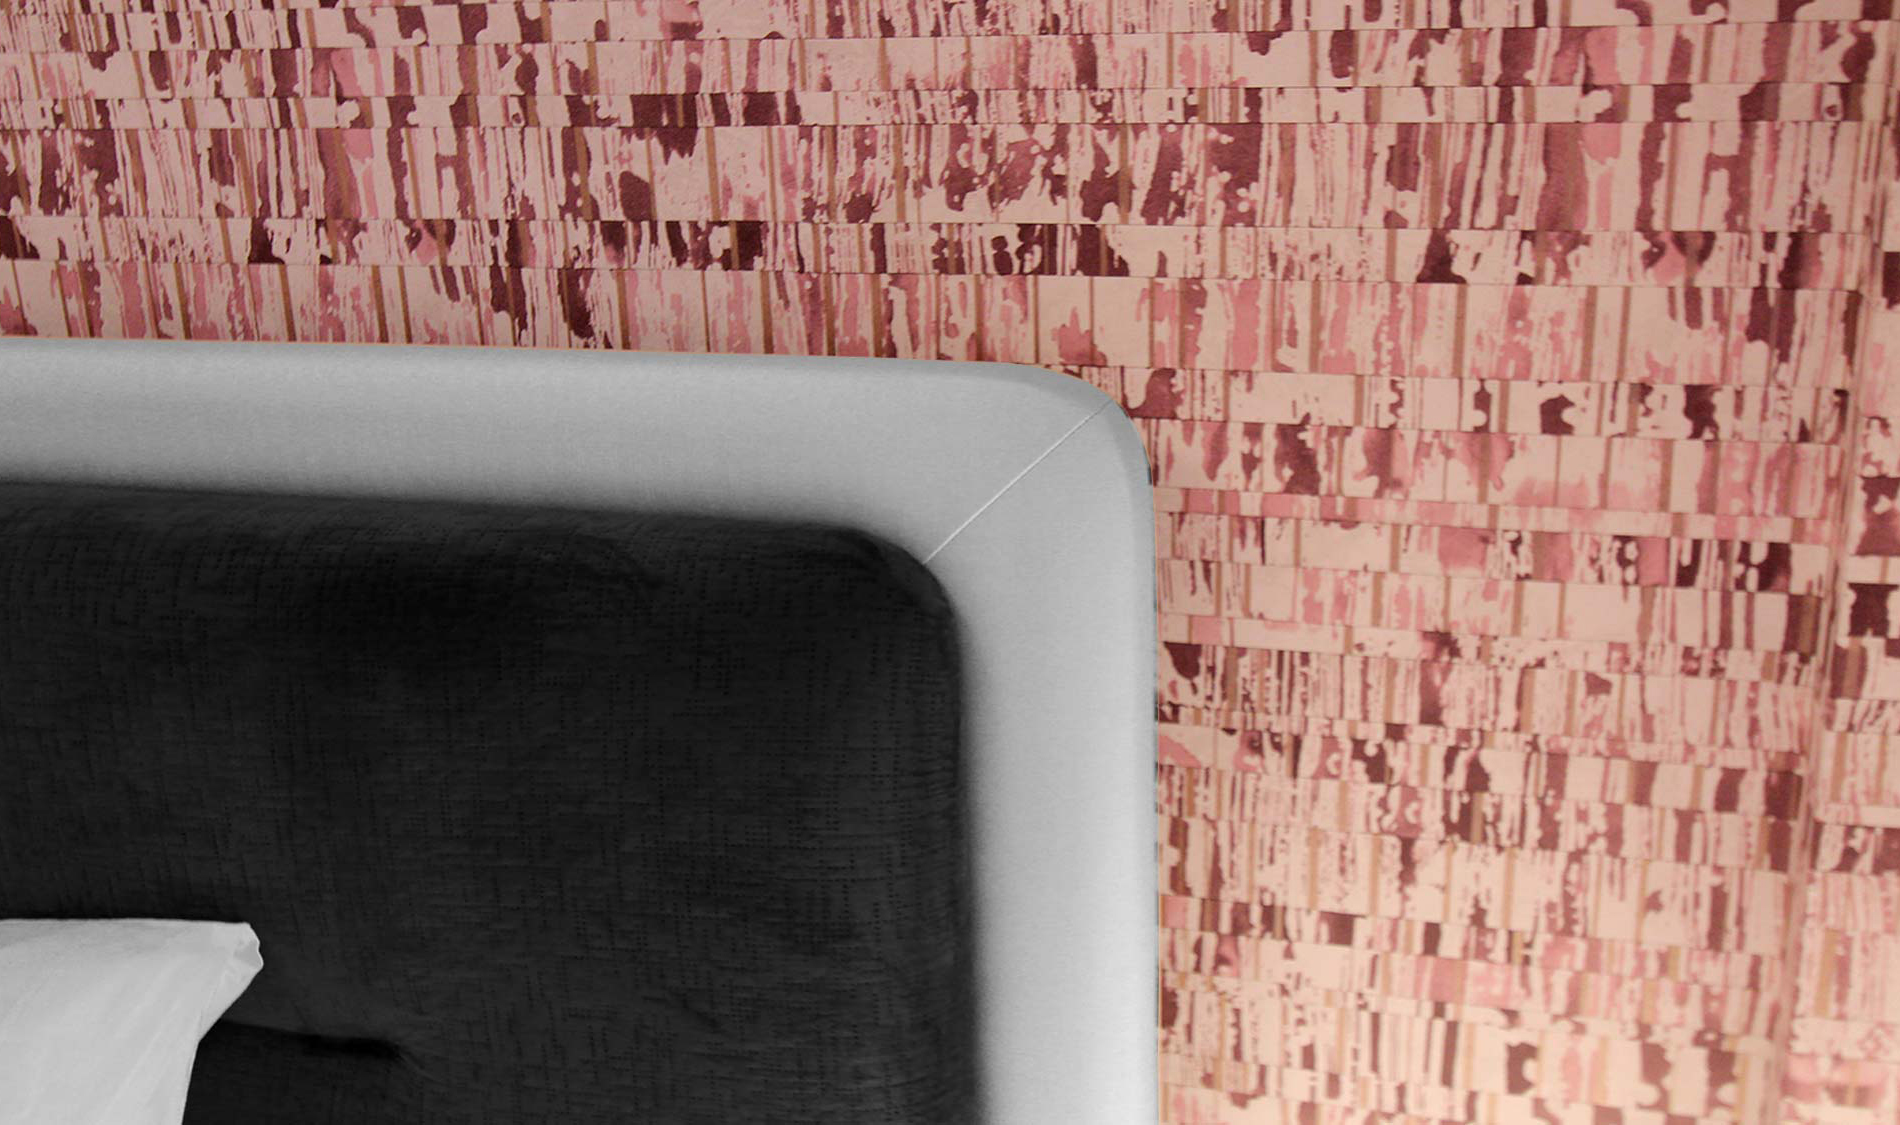 Apart. Cascais. Papel de parede moderno e elegante renova apartamento. Papel de parede no quarto de criança com cor rosa e cabeceira de cama . Projeto interiores Obra Atelier